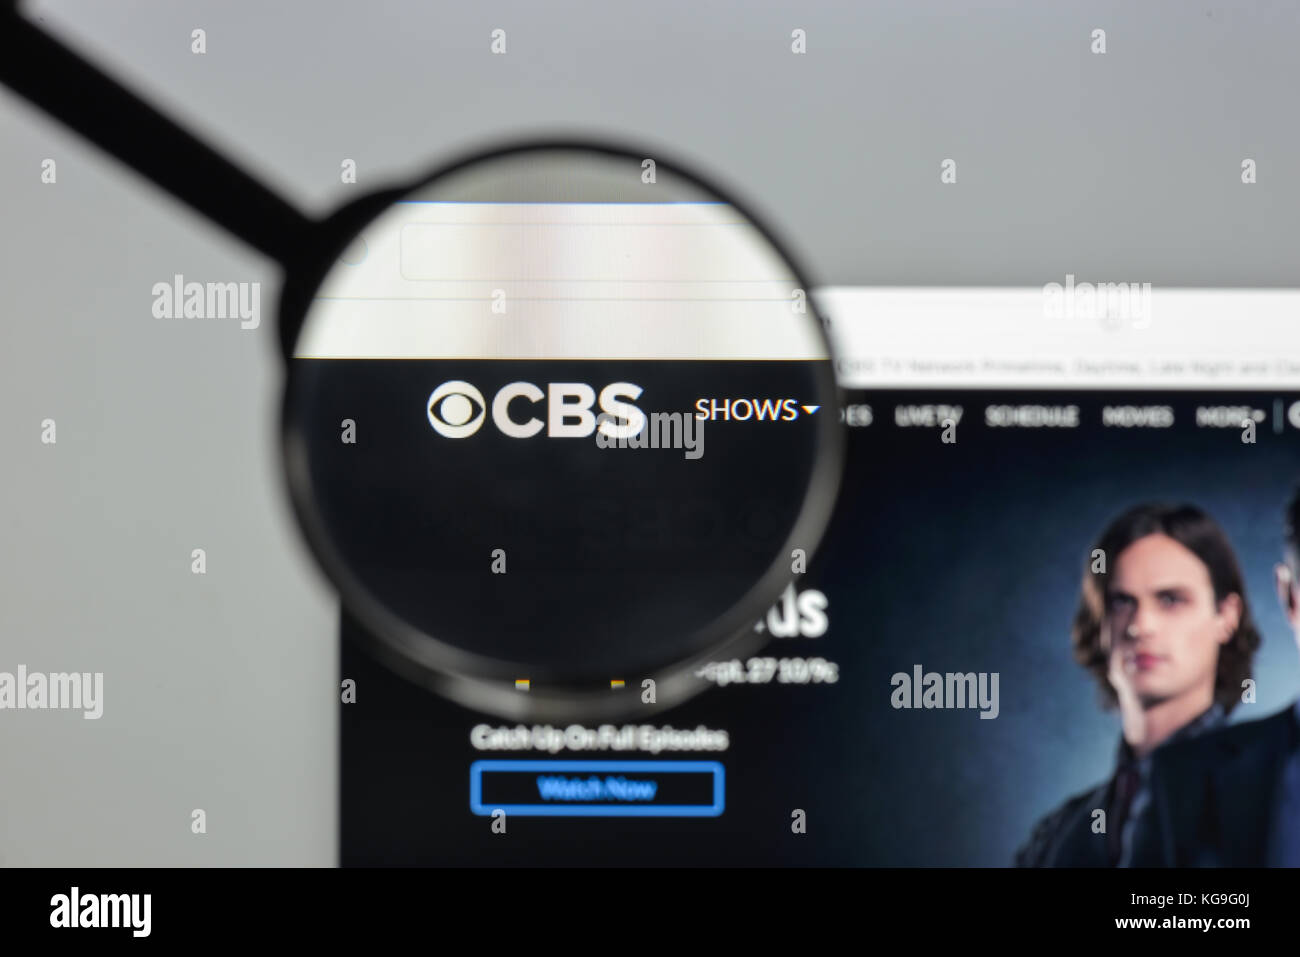 Mailand, Italien - 10 August 2017: CBS-Homepage. Es ist ein amerikanisches Englisch kommerziellen Fernsehen Netzwerk. cbs Logo sichtbar. Stockfoto